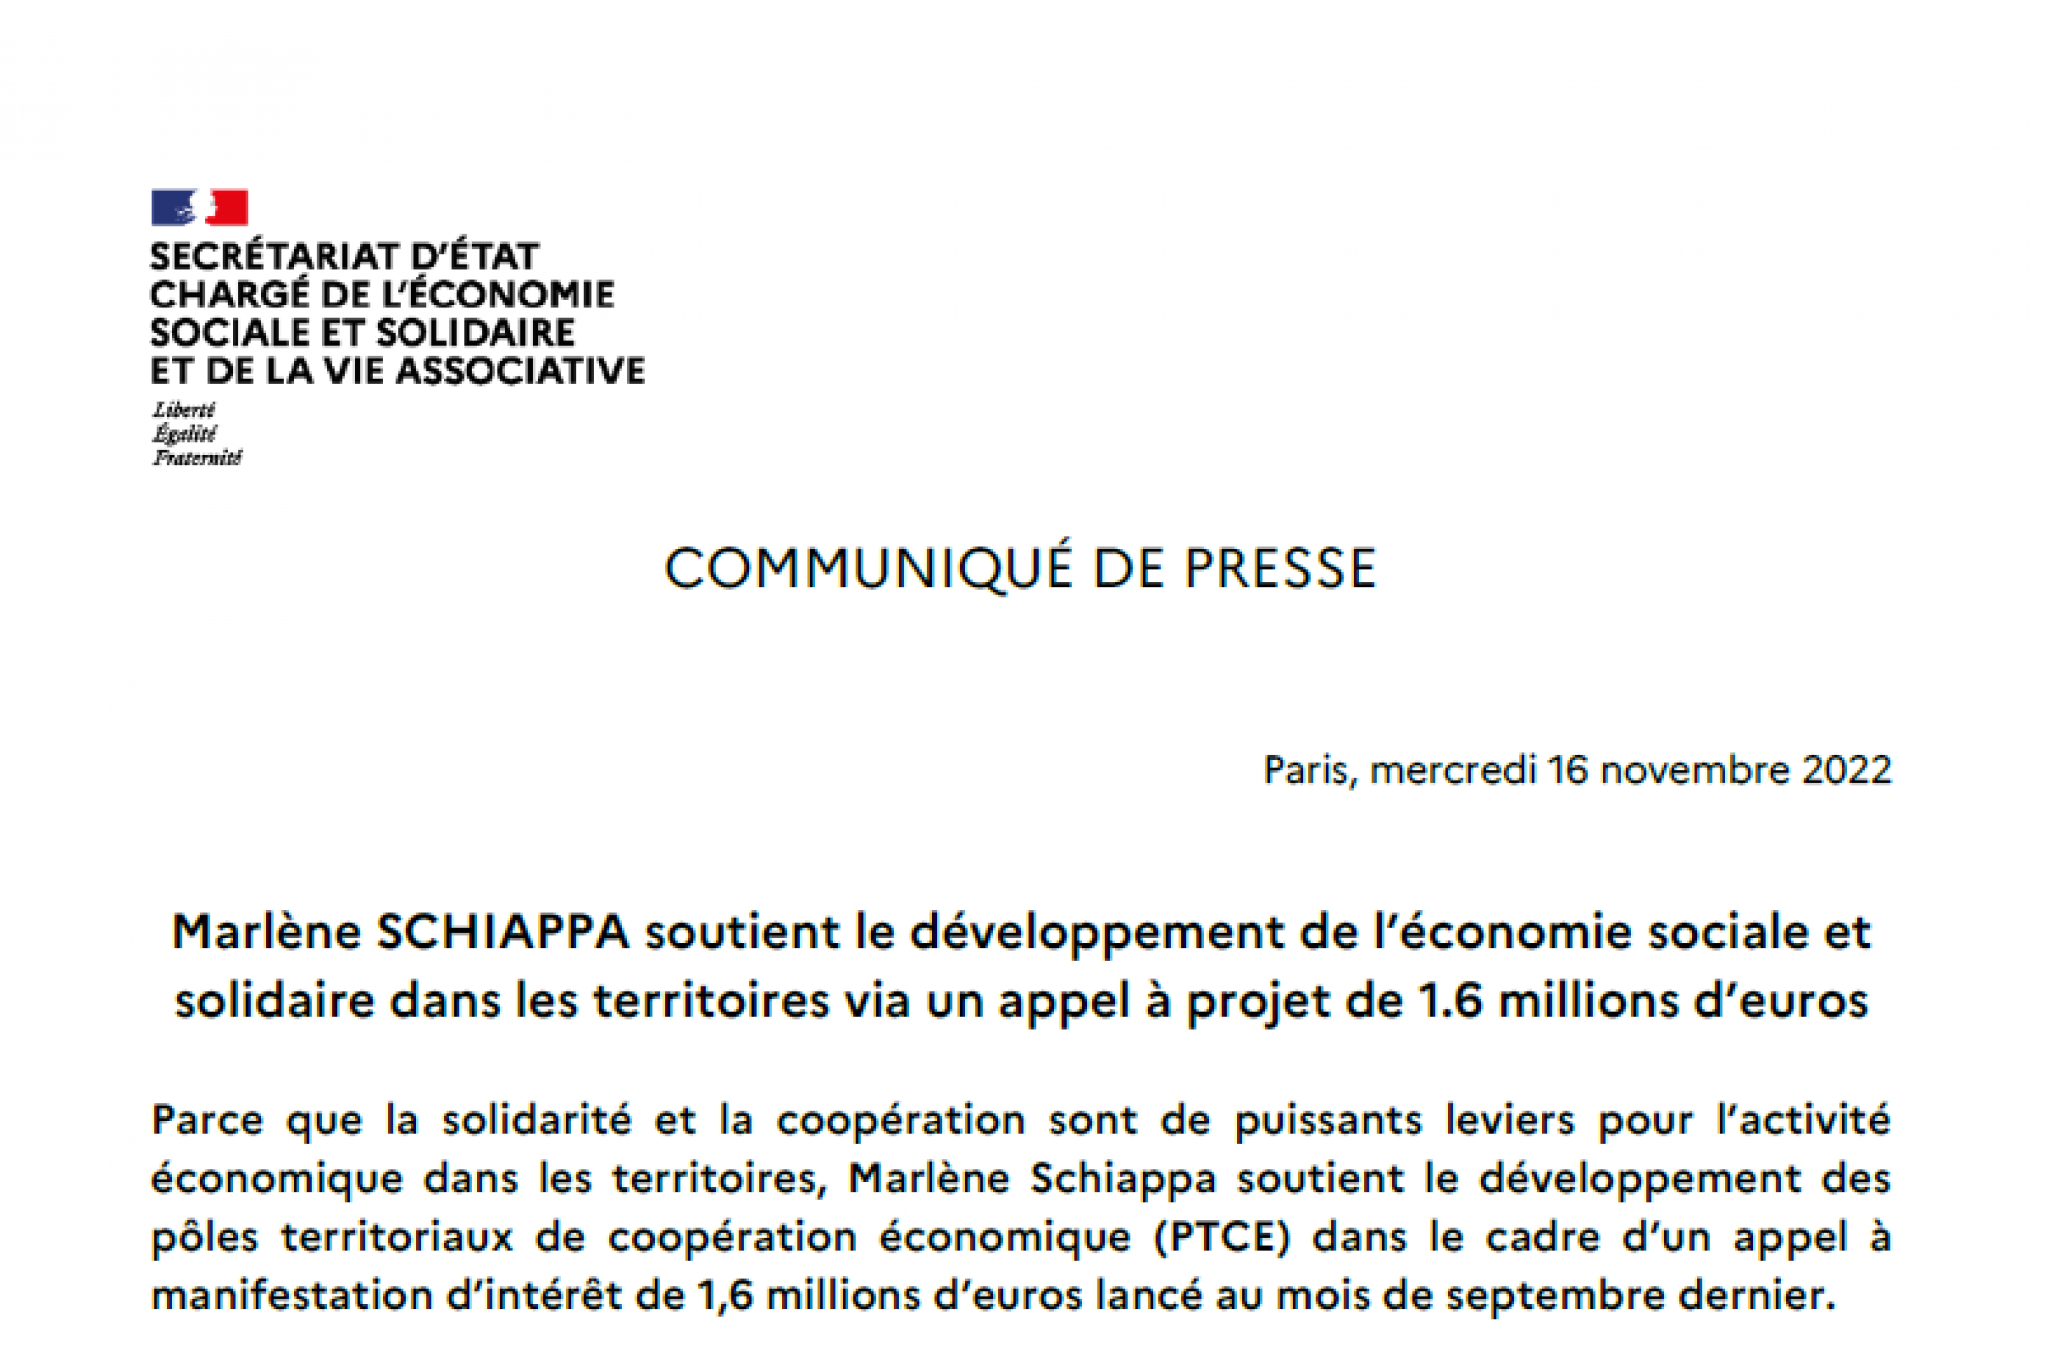 Marlène Schiappa soutient le développement de l’ESS dans les territoires via un appel à projet de 1,6 million d’euros